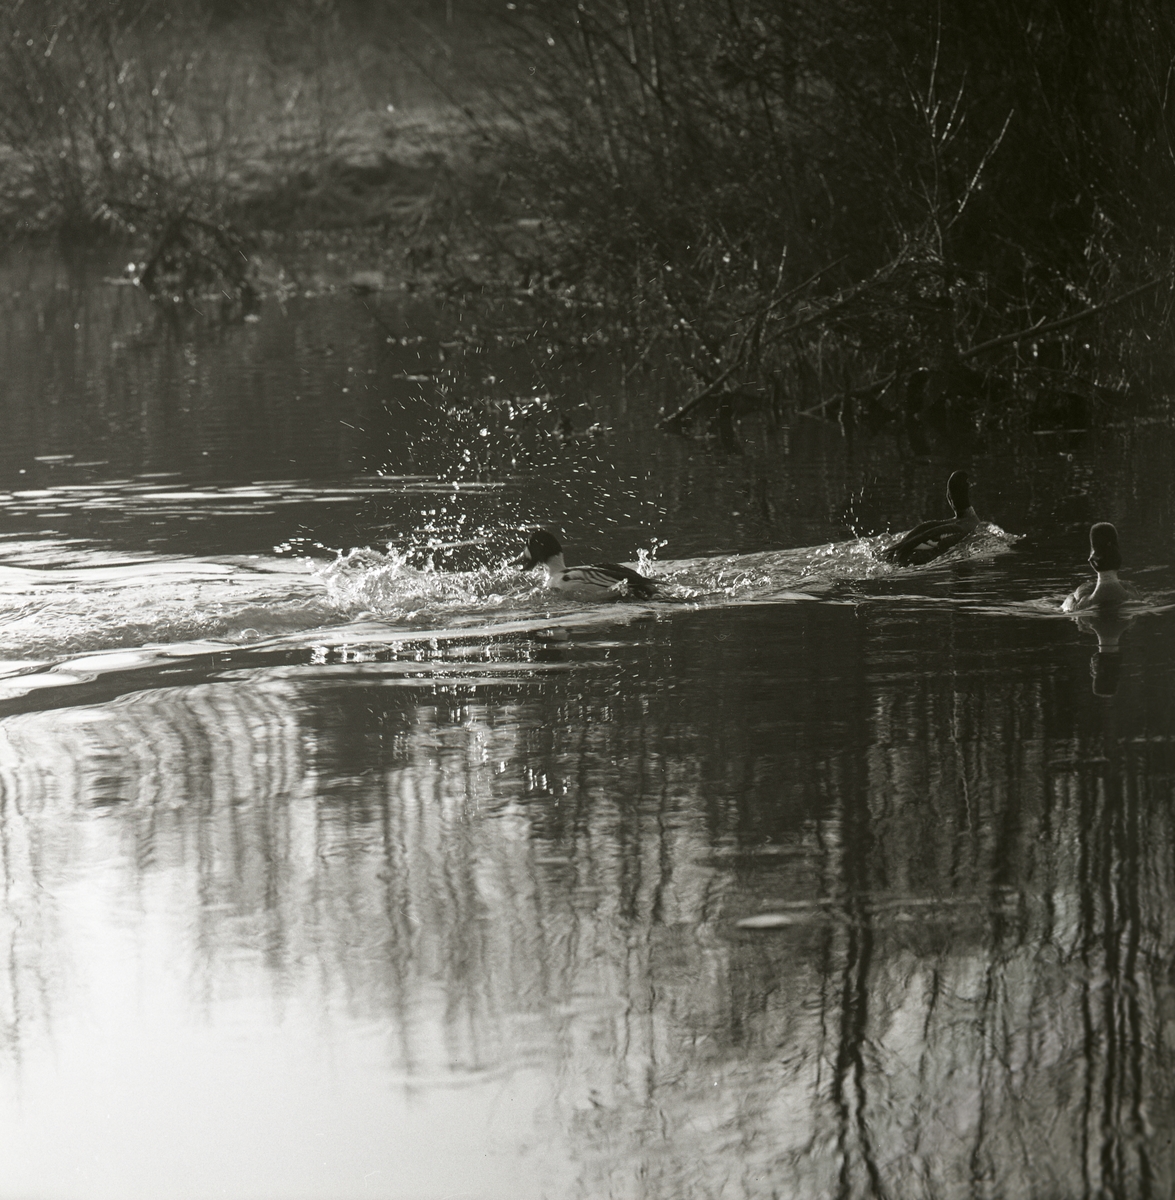 Tre knipor simmar i en vattensamling. Framför en av fåglarna skvätter vatten upp, maj 1963.